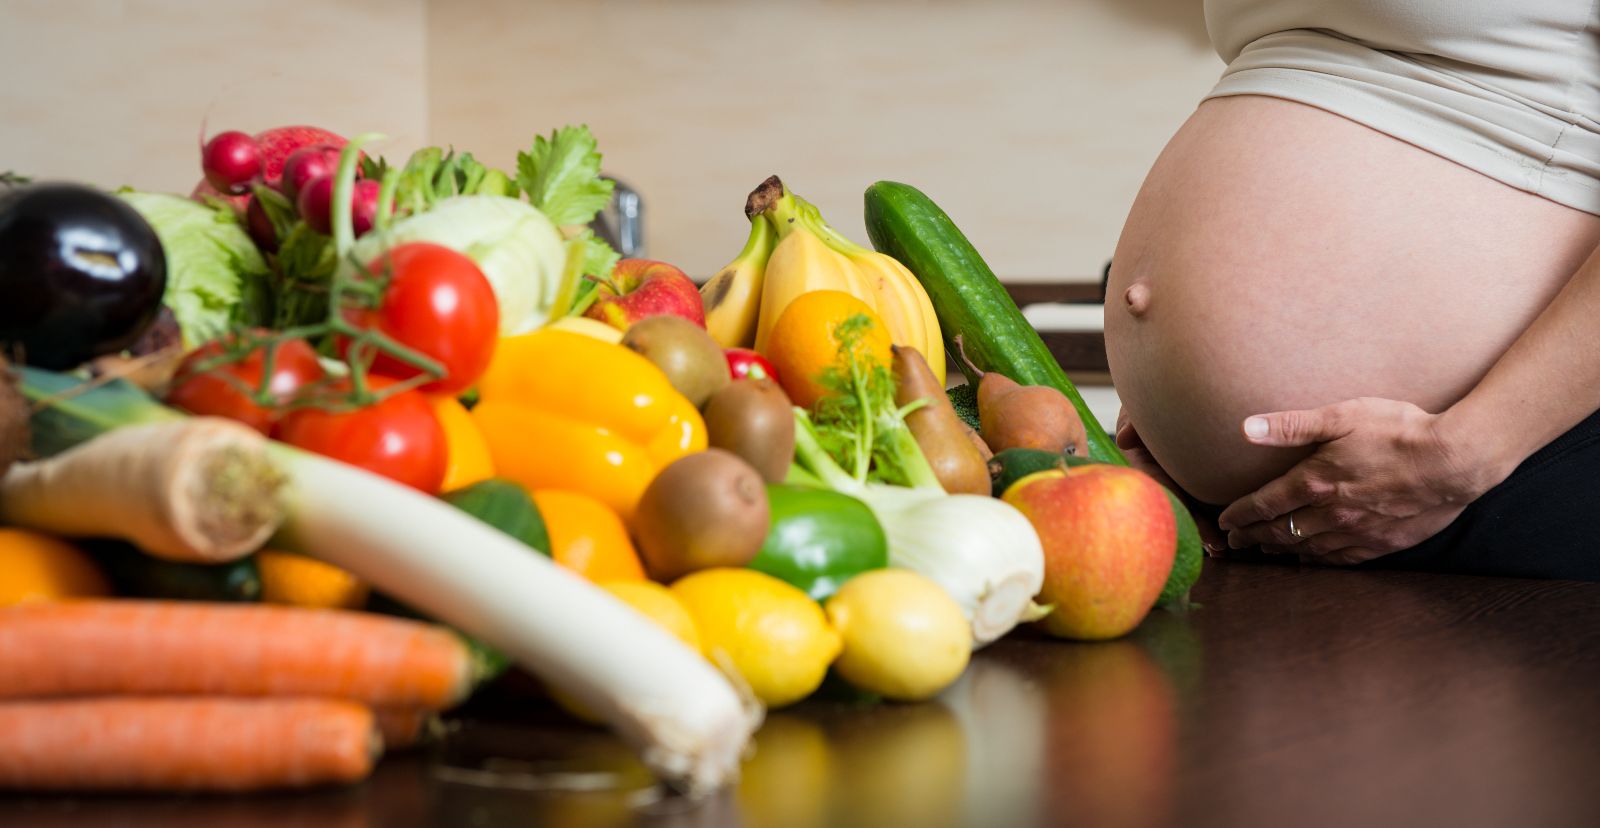 mujer embarazada con vegetales y frutas